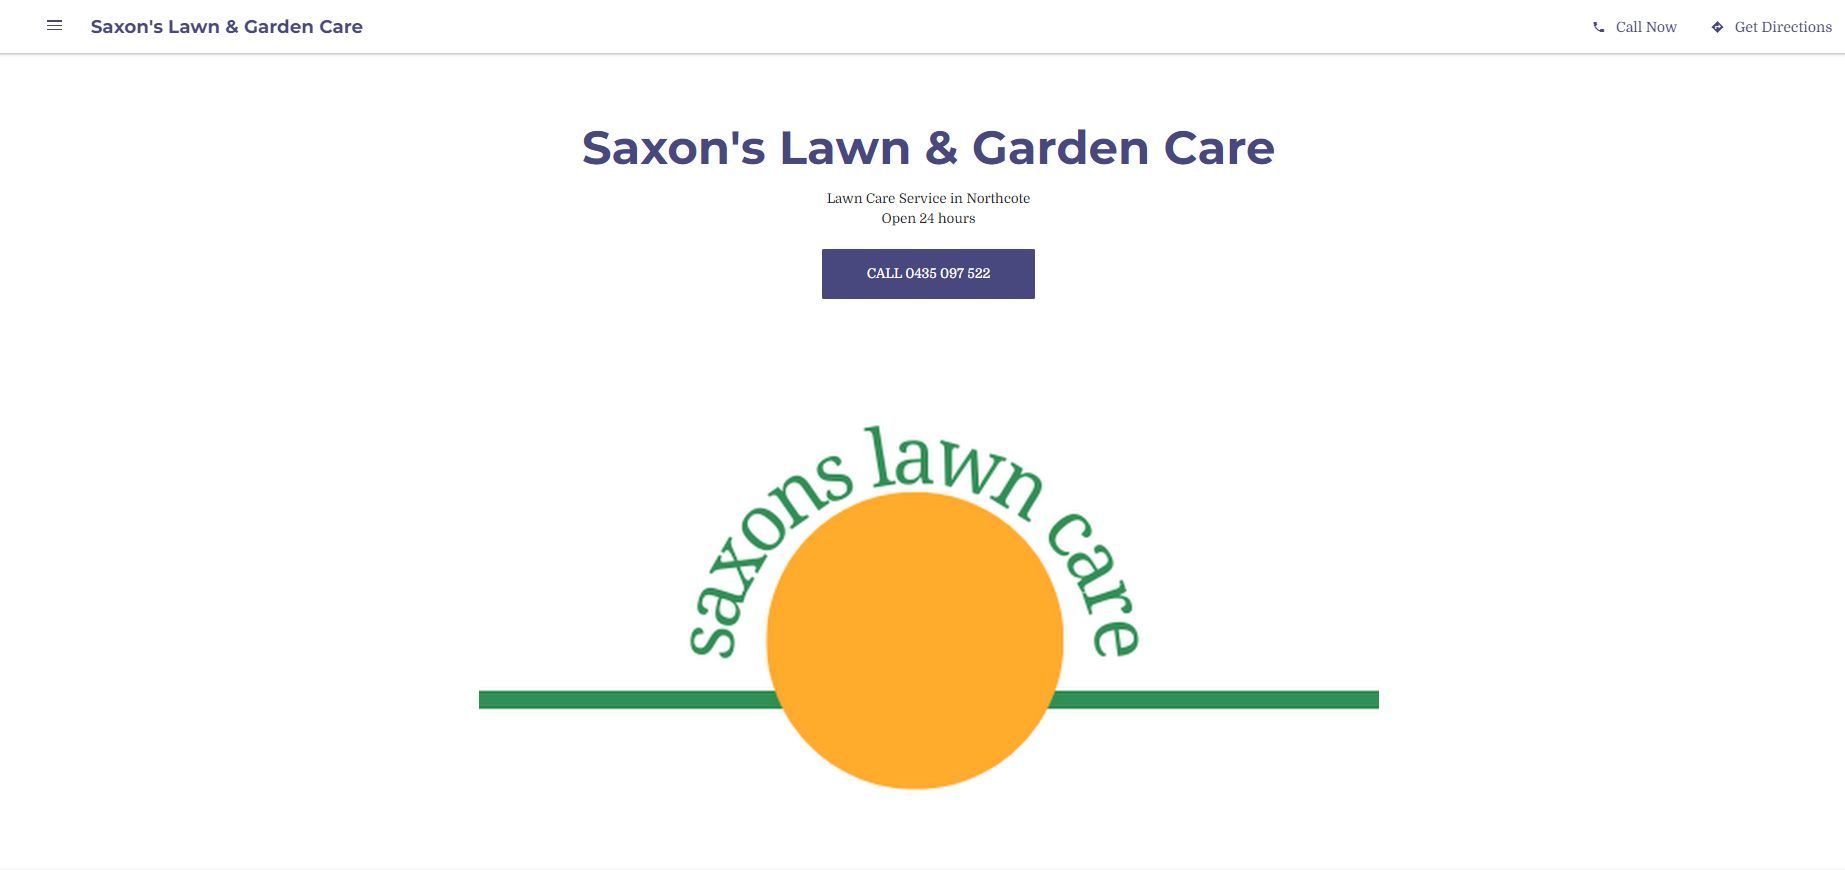 saxon s lawn & garden care lawn care service in northcote 2023 10 19 21 57 56